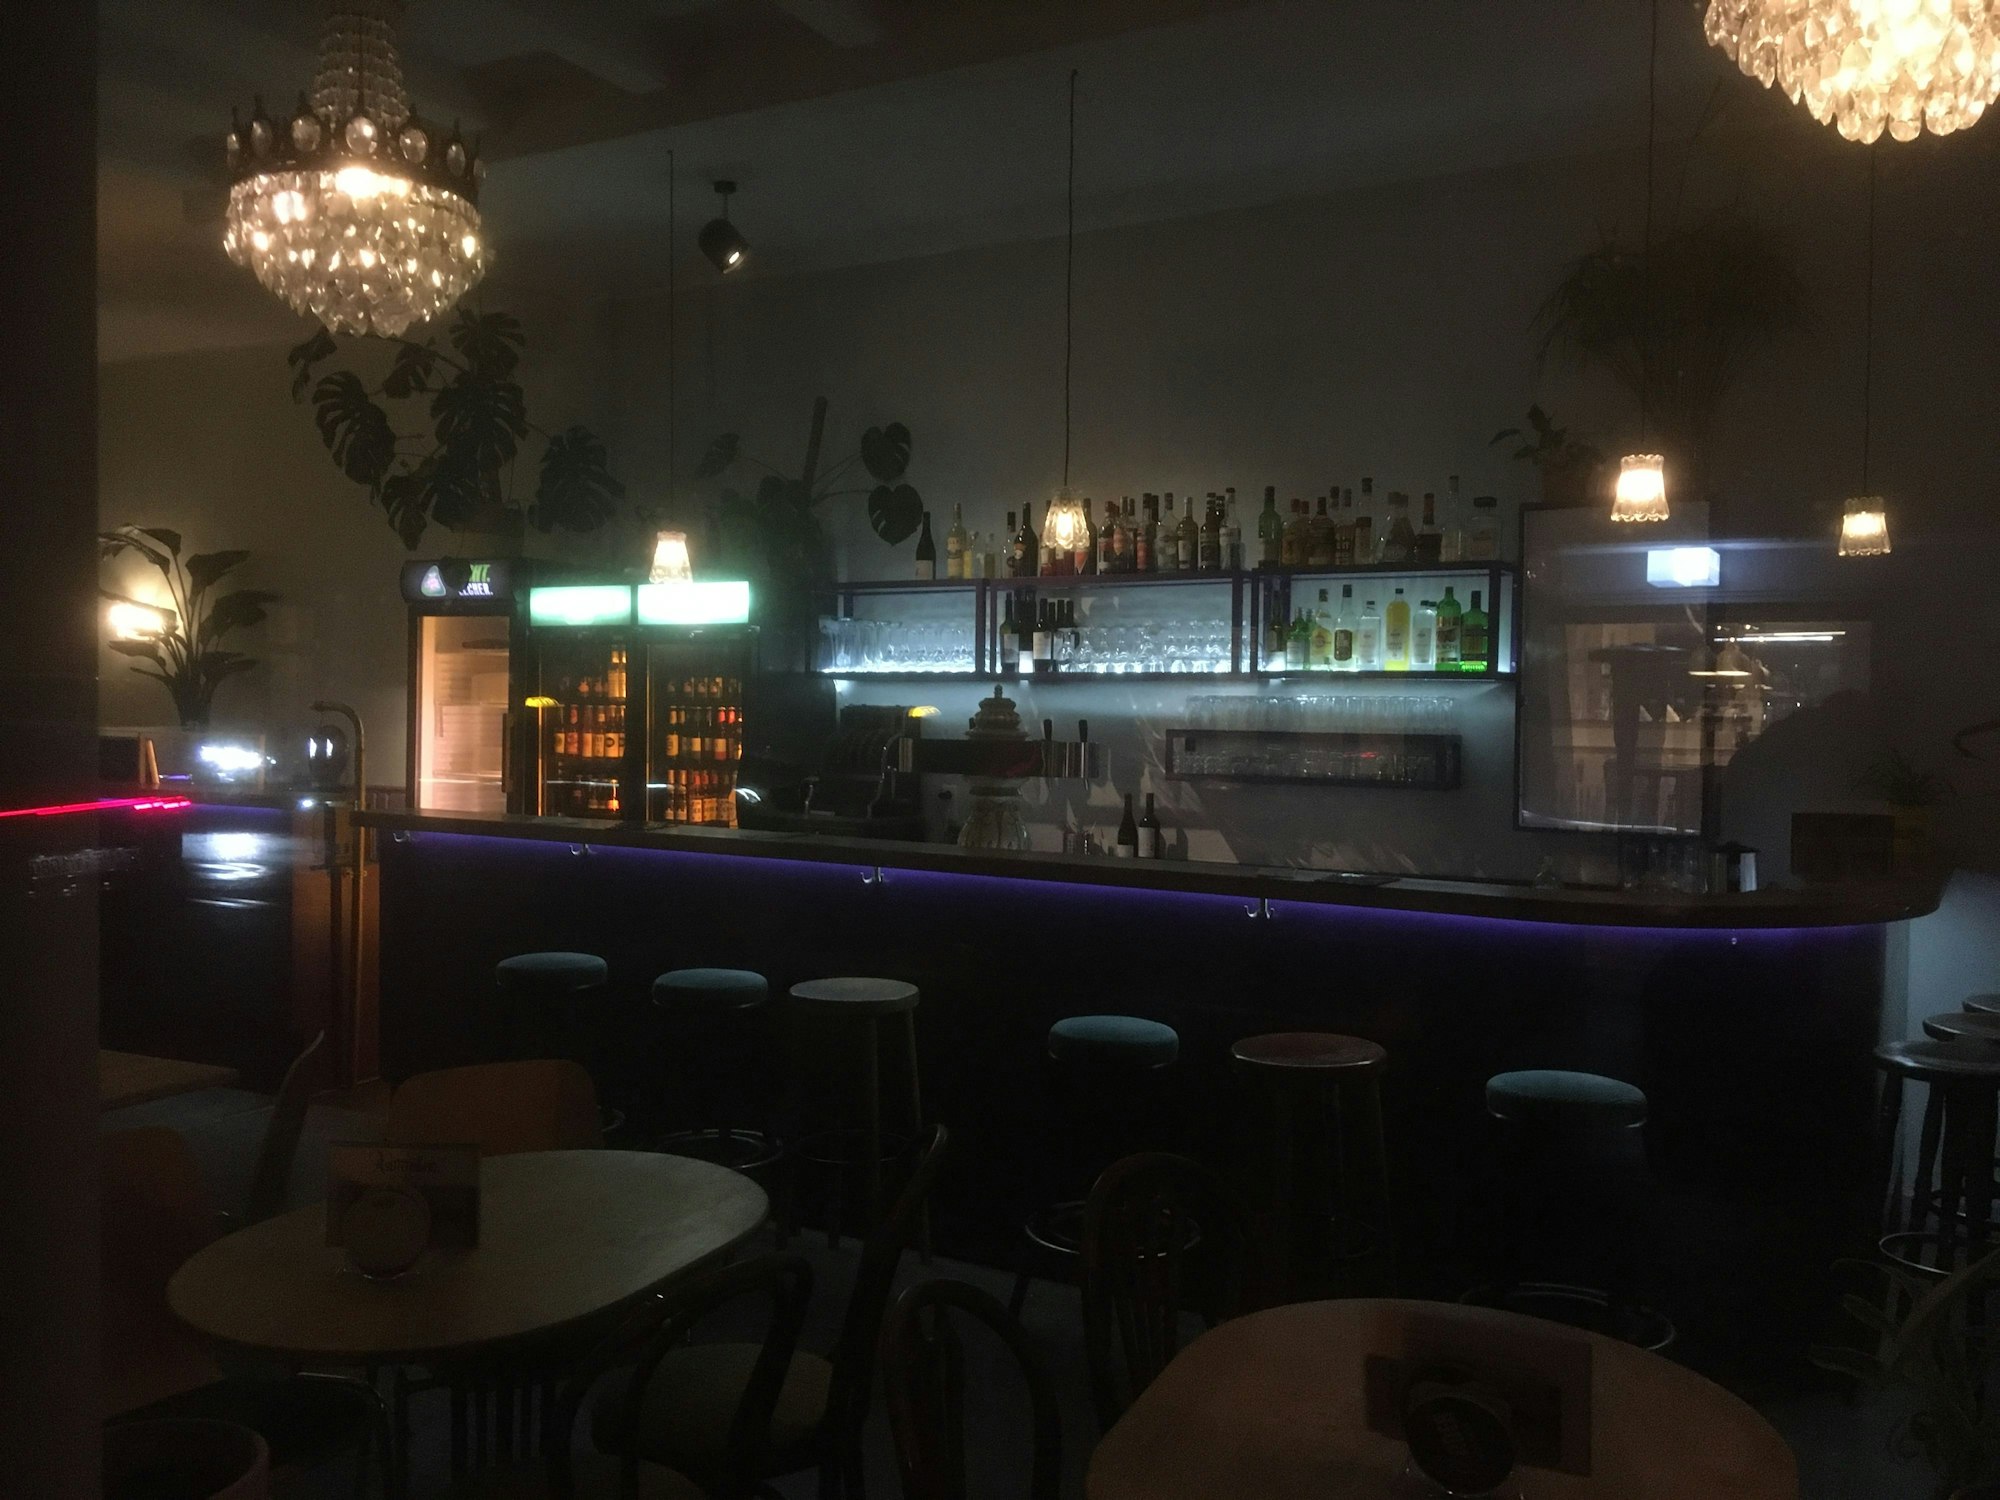 Die Asimmetric Bar am Abend, man sieht die lila Bartheke und beleuchtete Bar